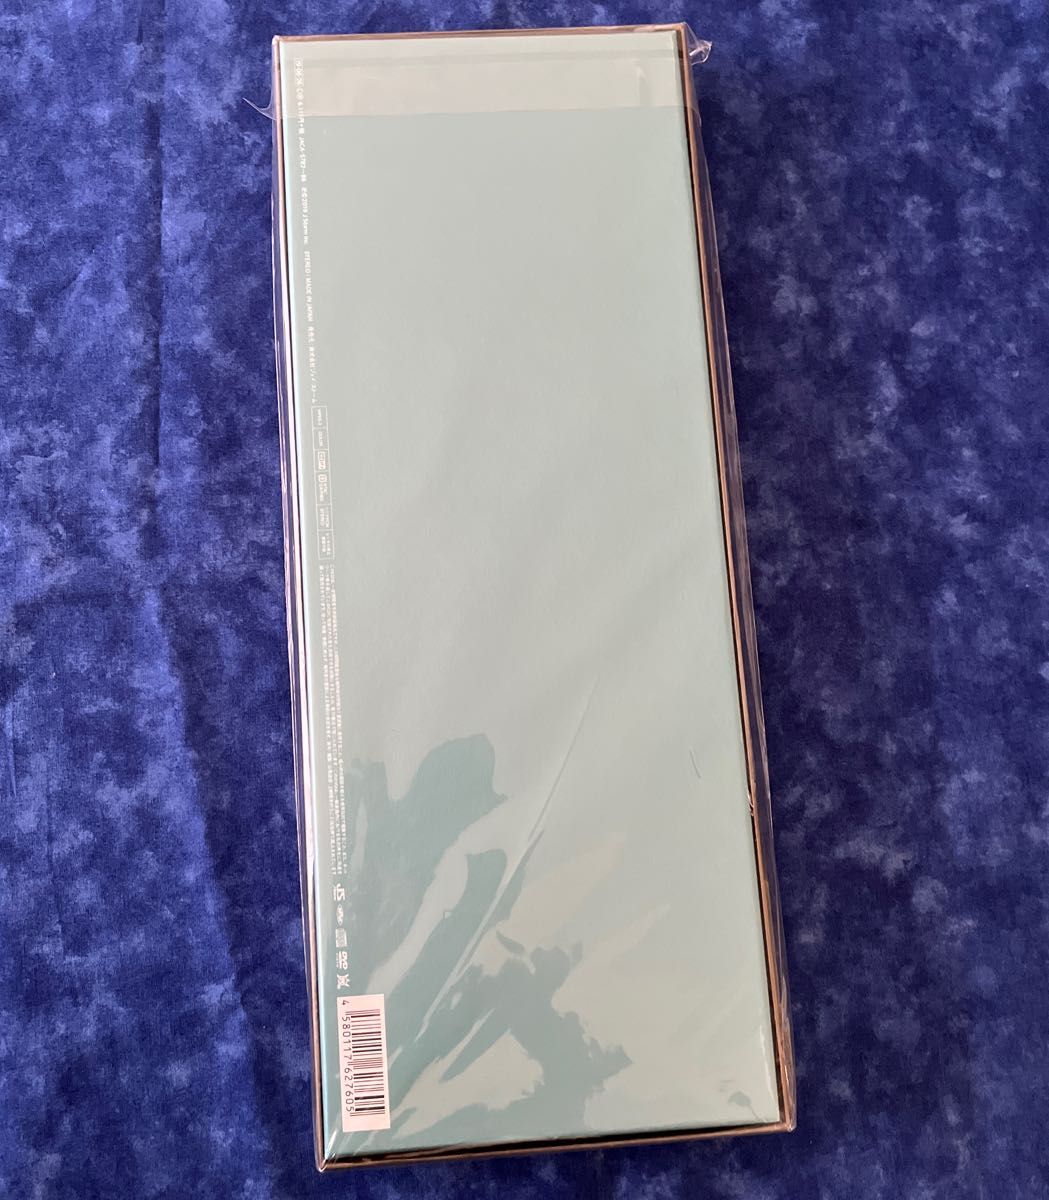 嵐5×20 All the BEST!! 1999-2019 (初回限定盤1) (4CD+1DVD-A) 新品未開封